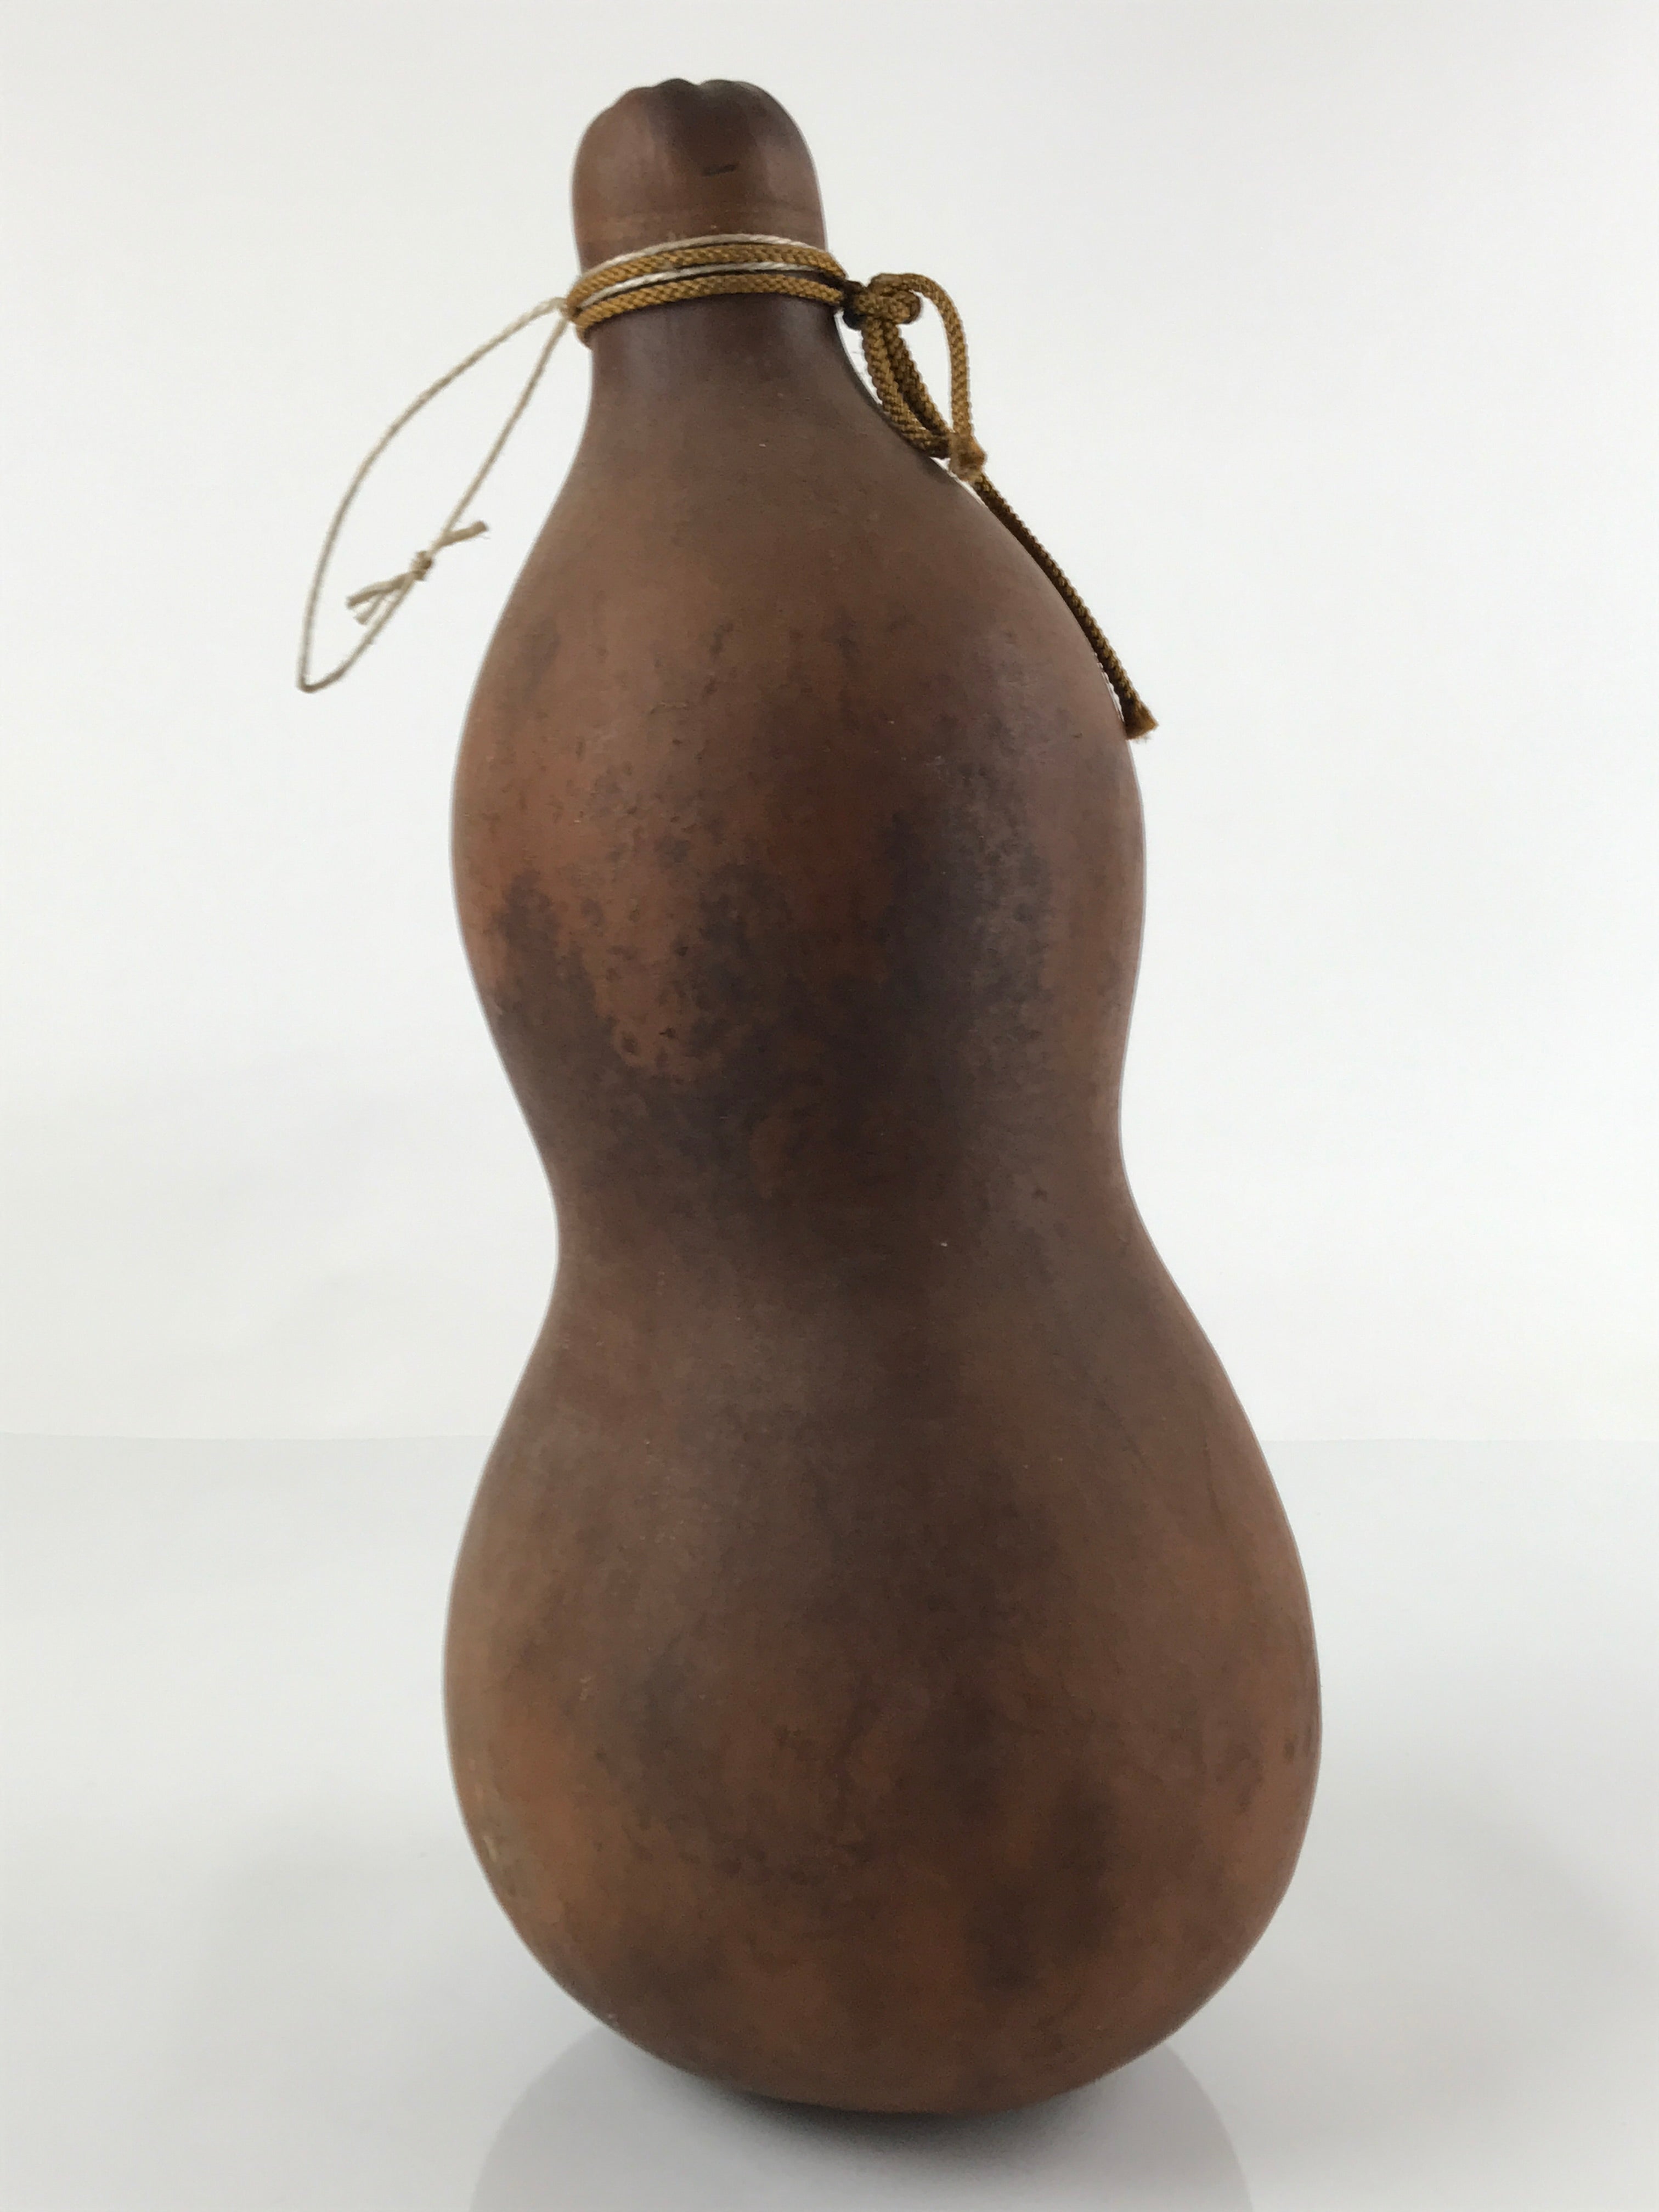 Japanese Natural Hyotan Gourd Vtg Sake Bottle Lucky Charm Large Calabash G255